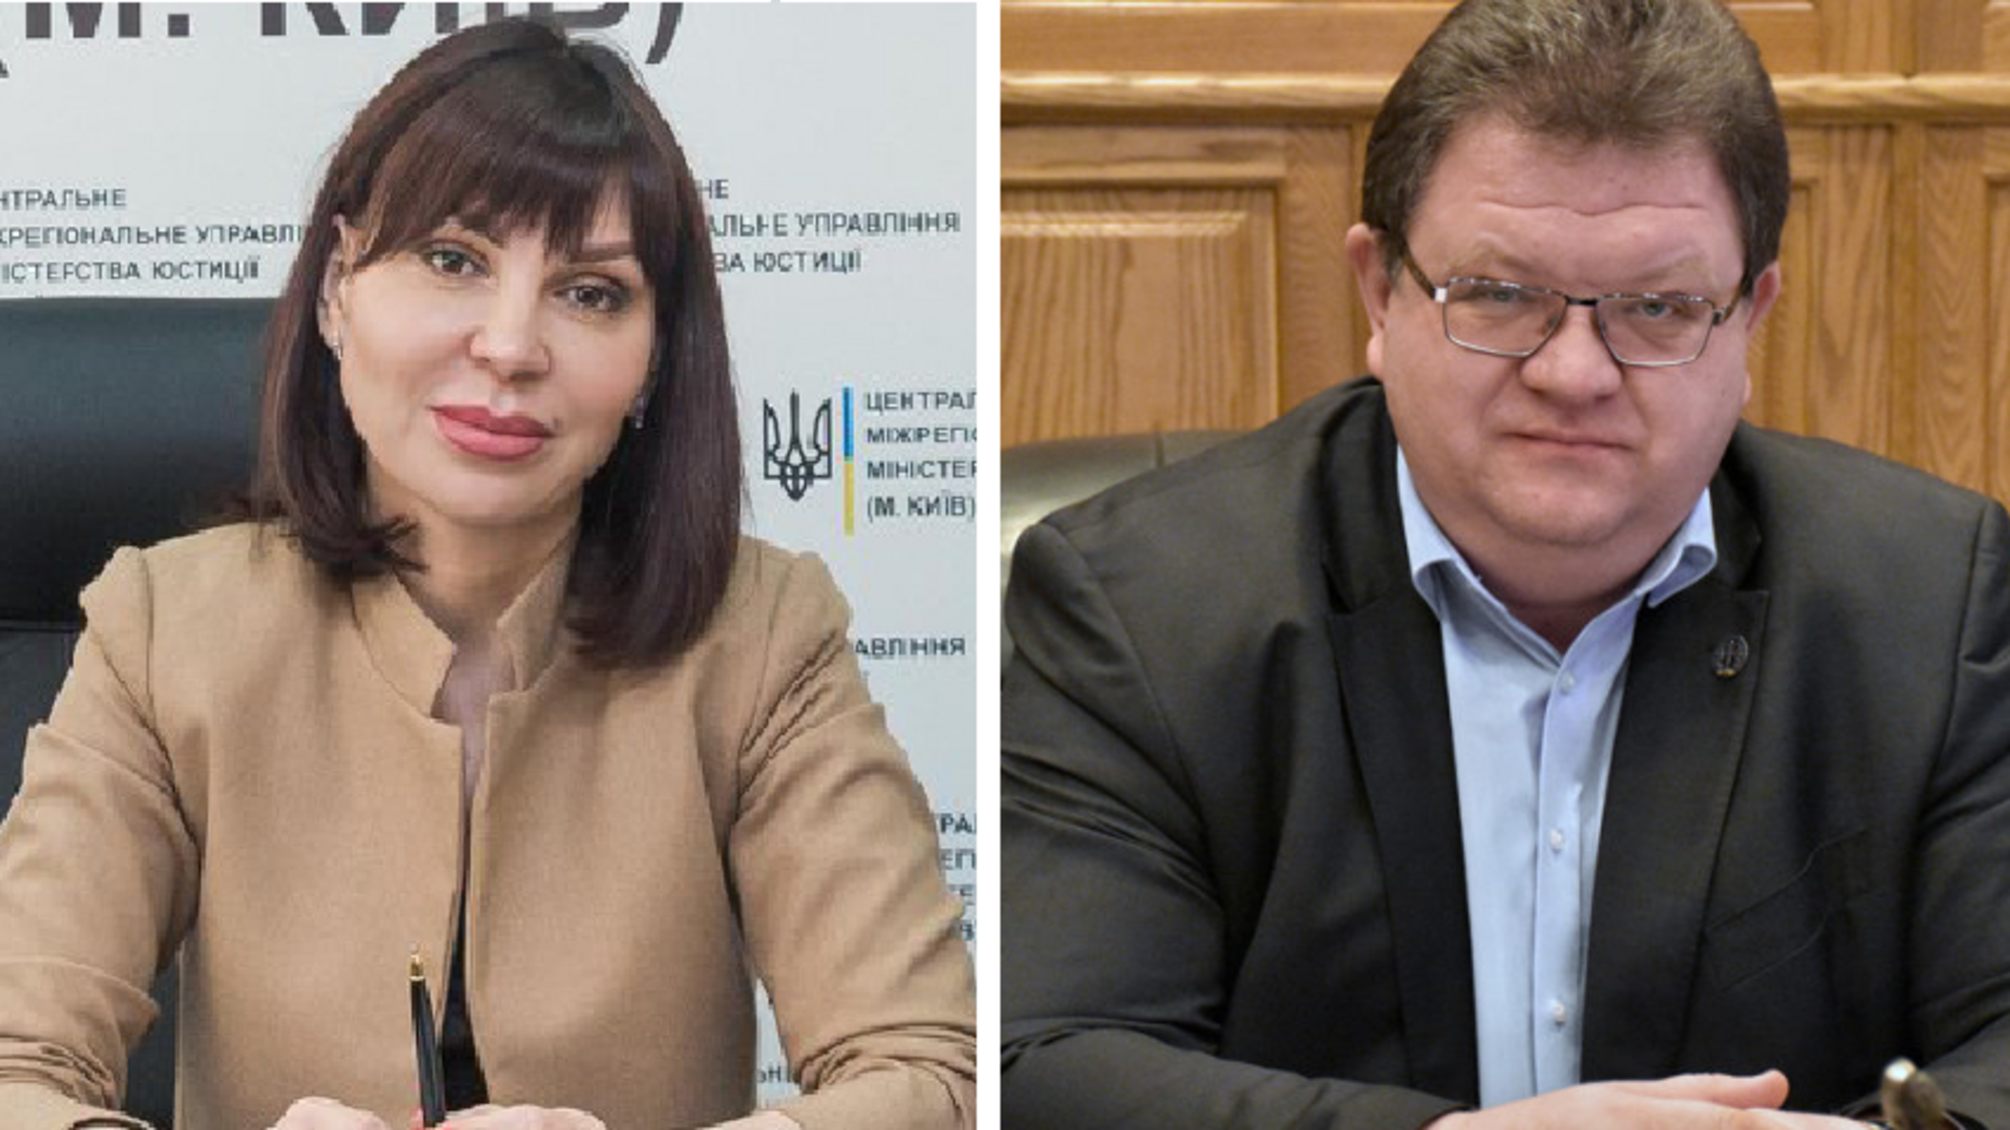 Спочатку суддя Львов, тепер чиновниця: у Верховному Суді України працюють два громадянина рф